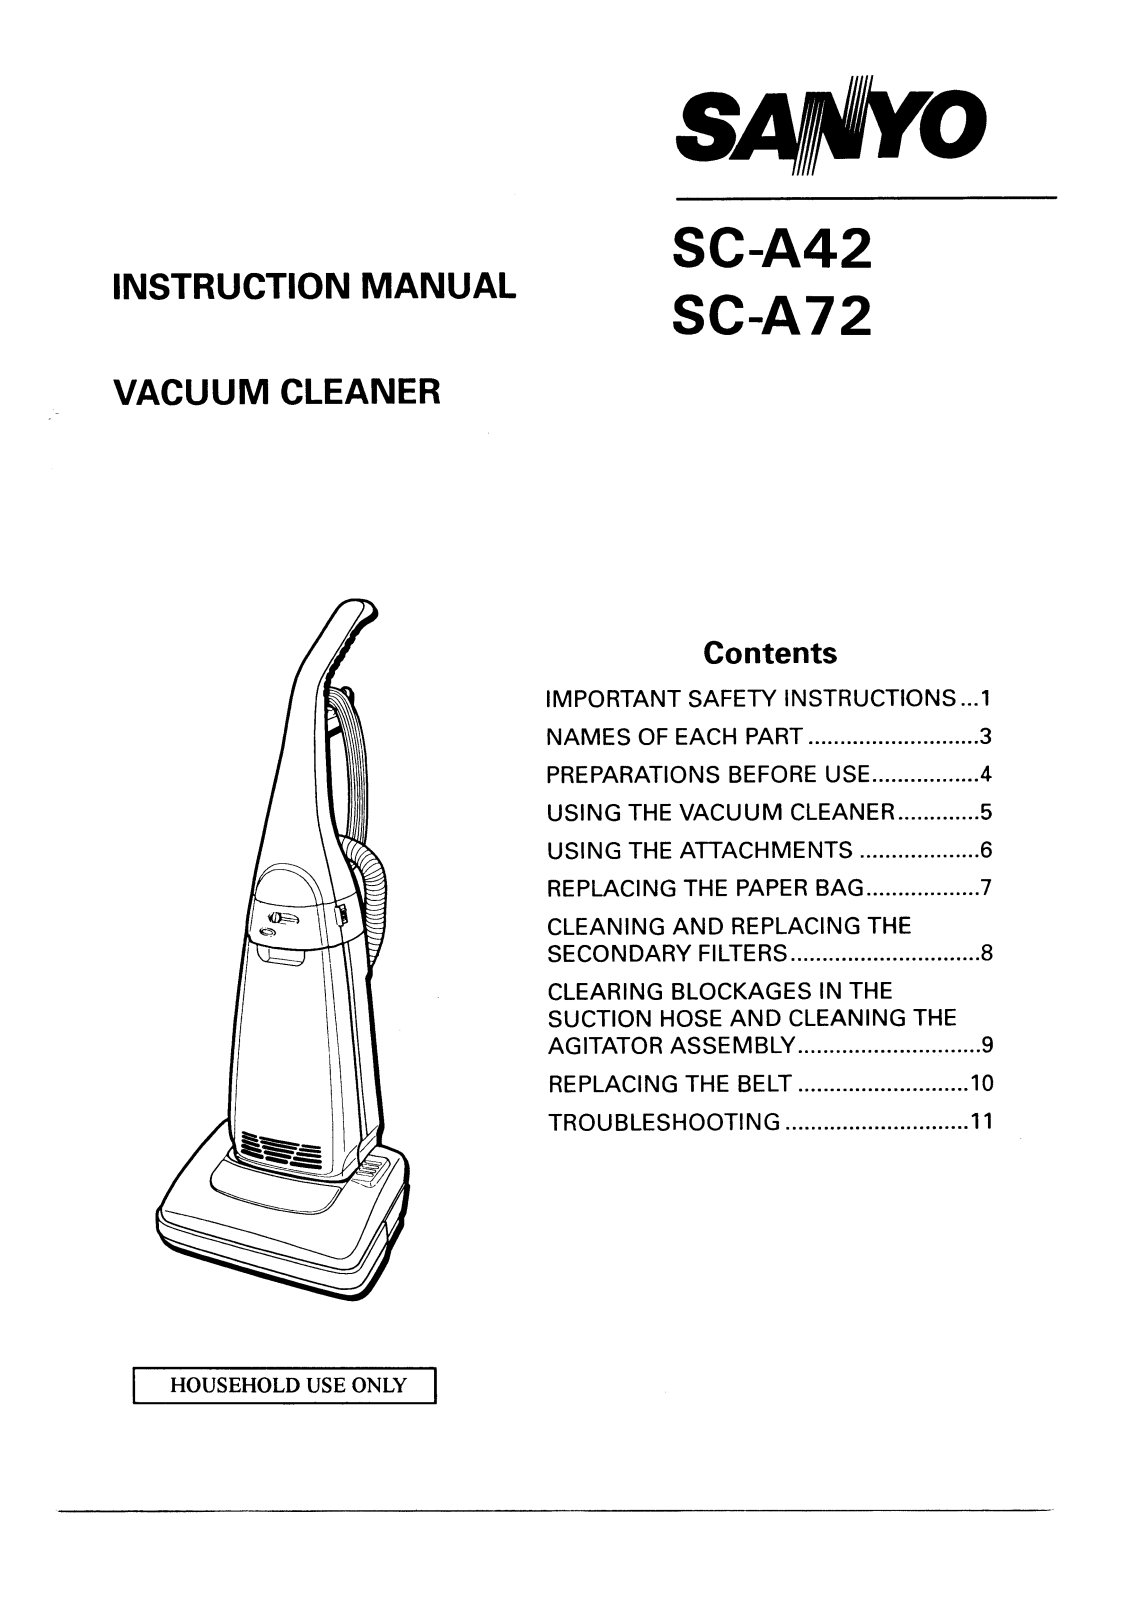 Sanyo SC-A42, SC-A72 Instruction Manual